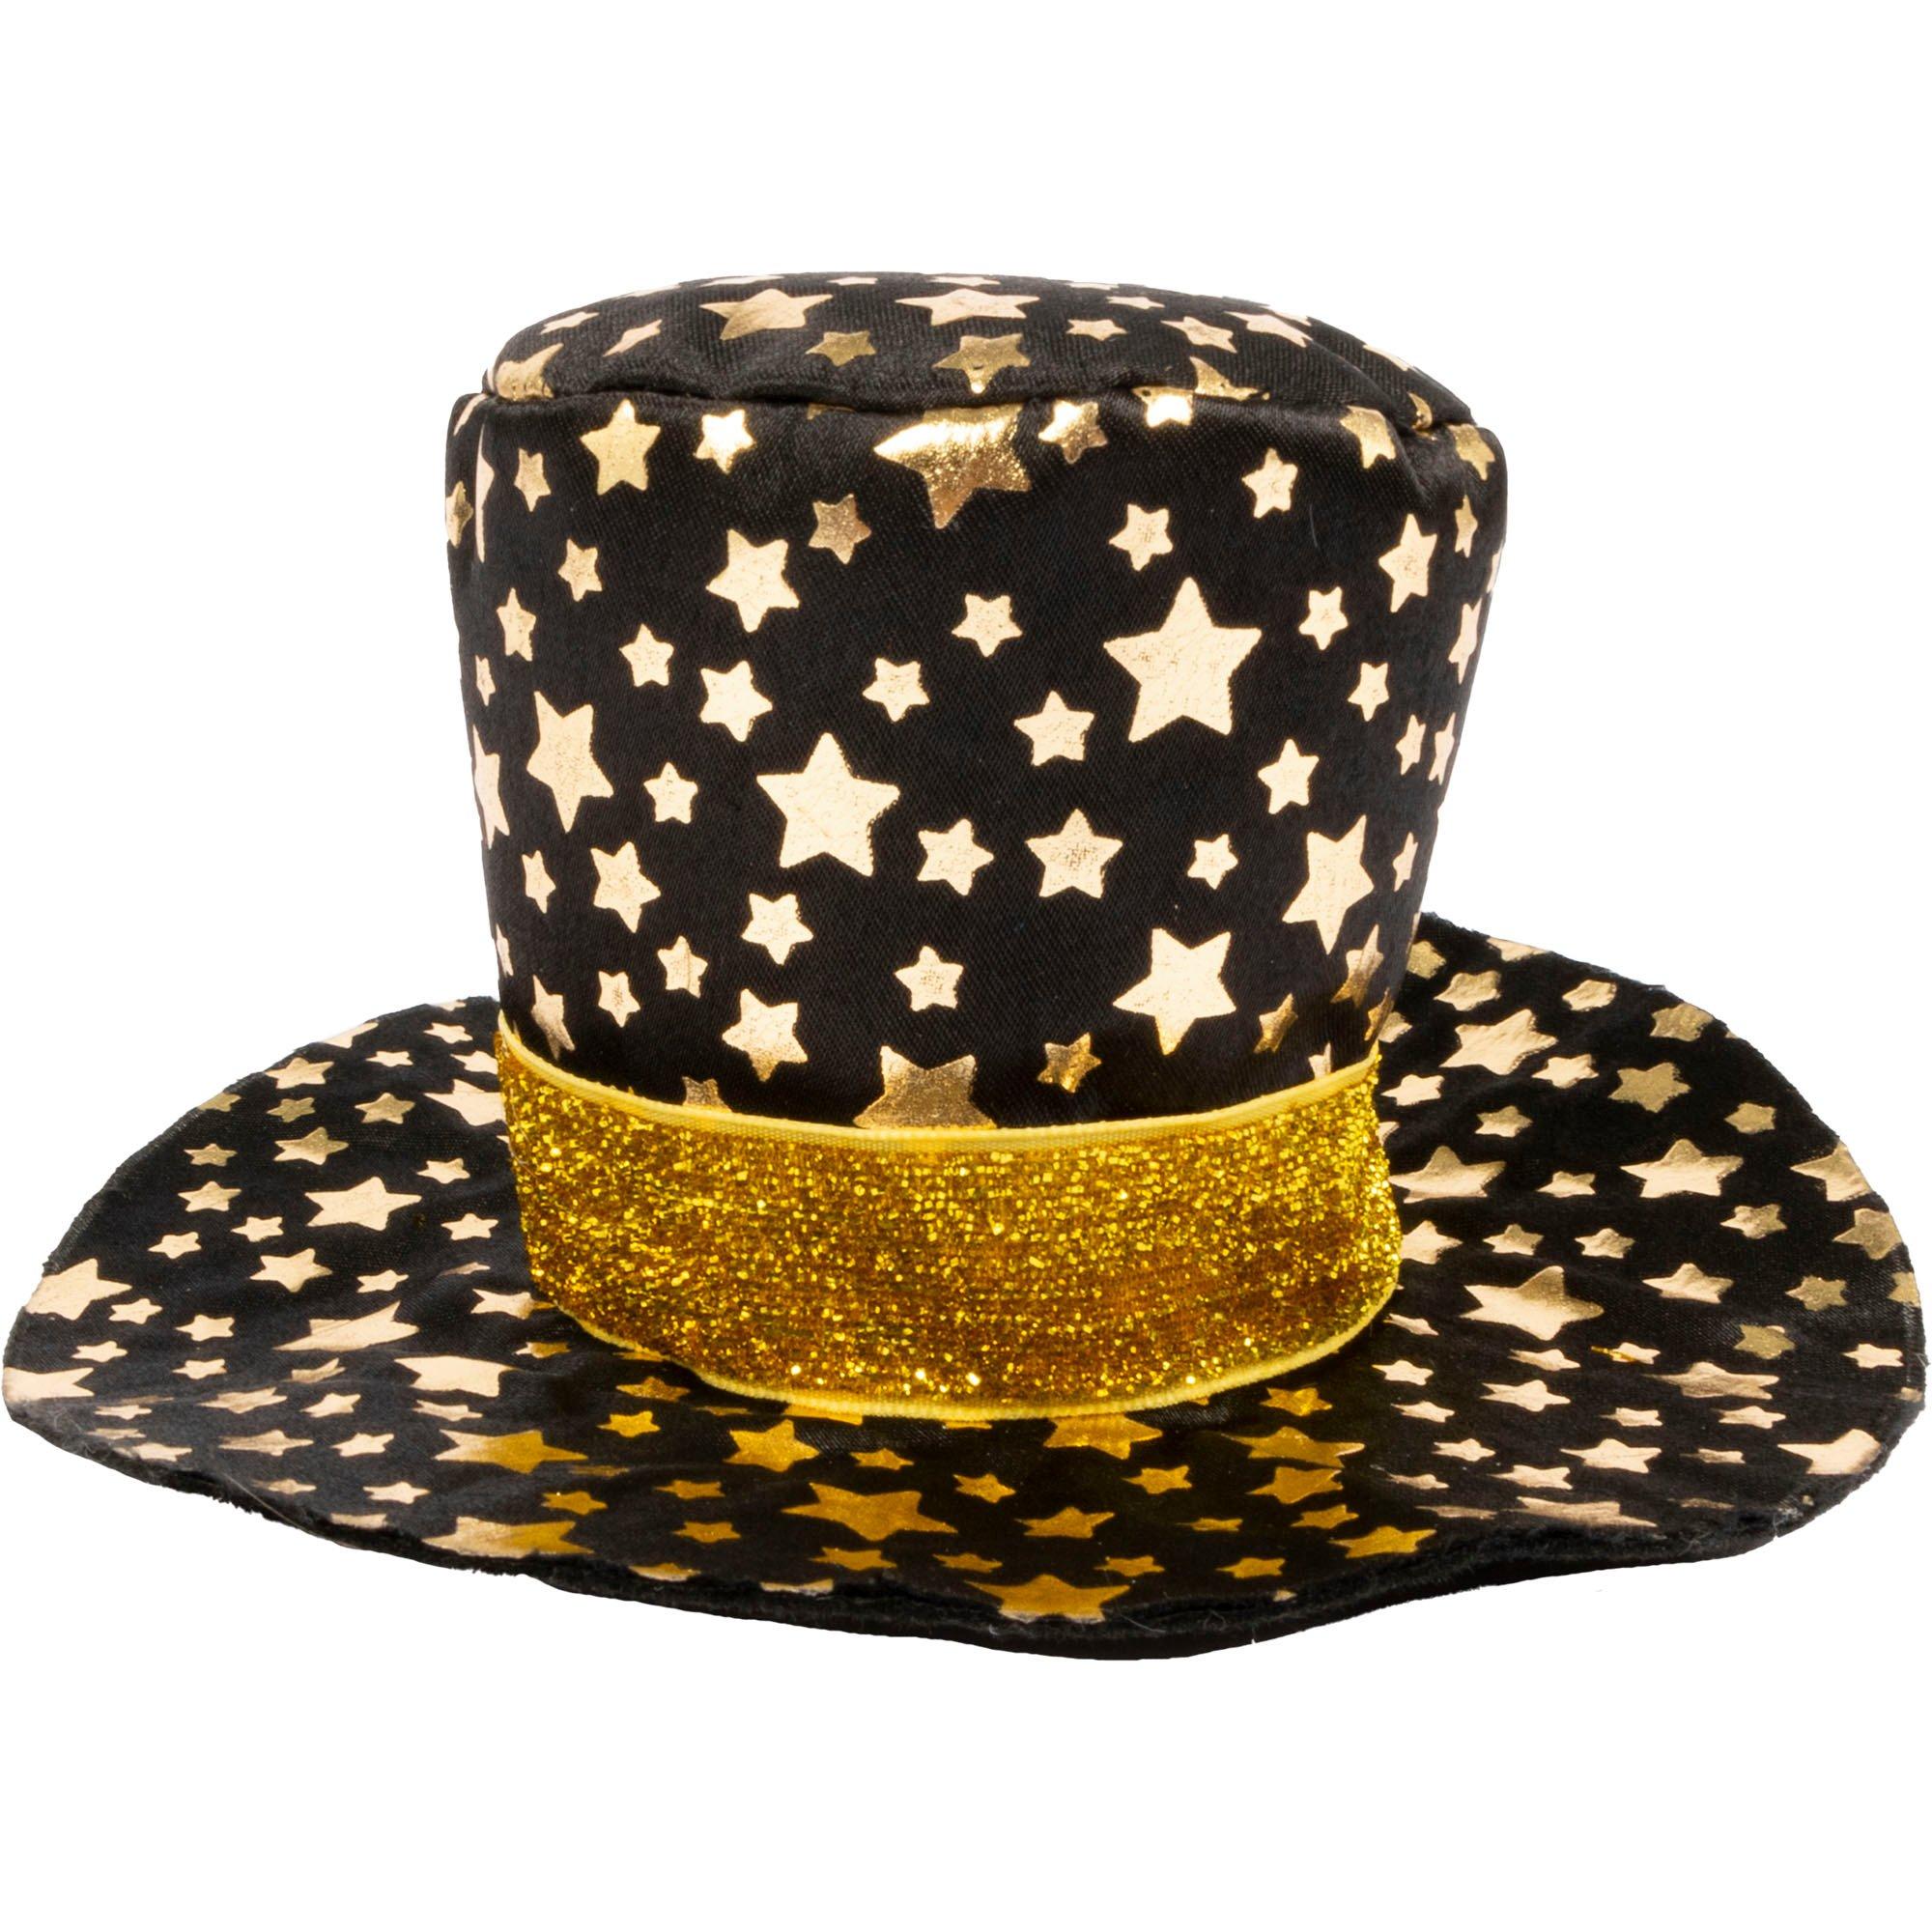 Expensive Golden Top Hat